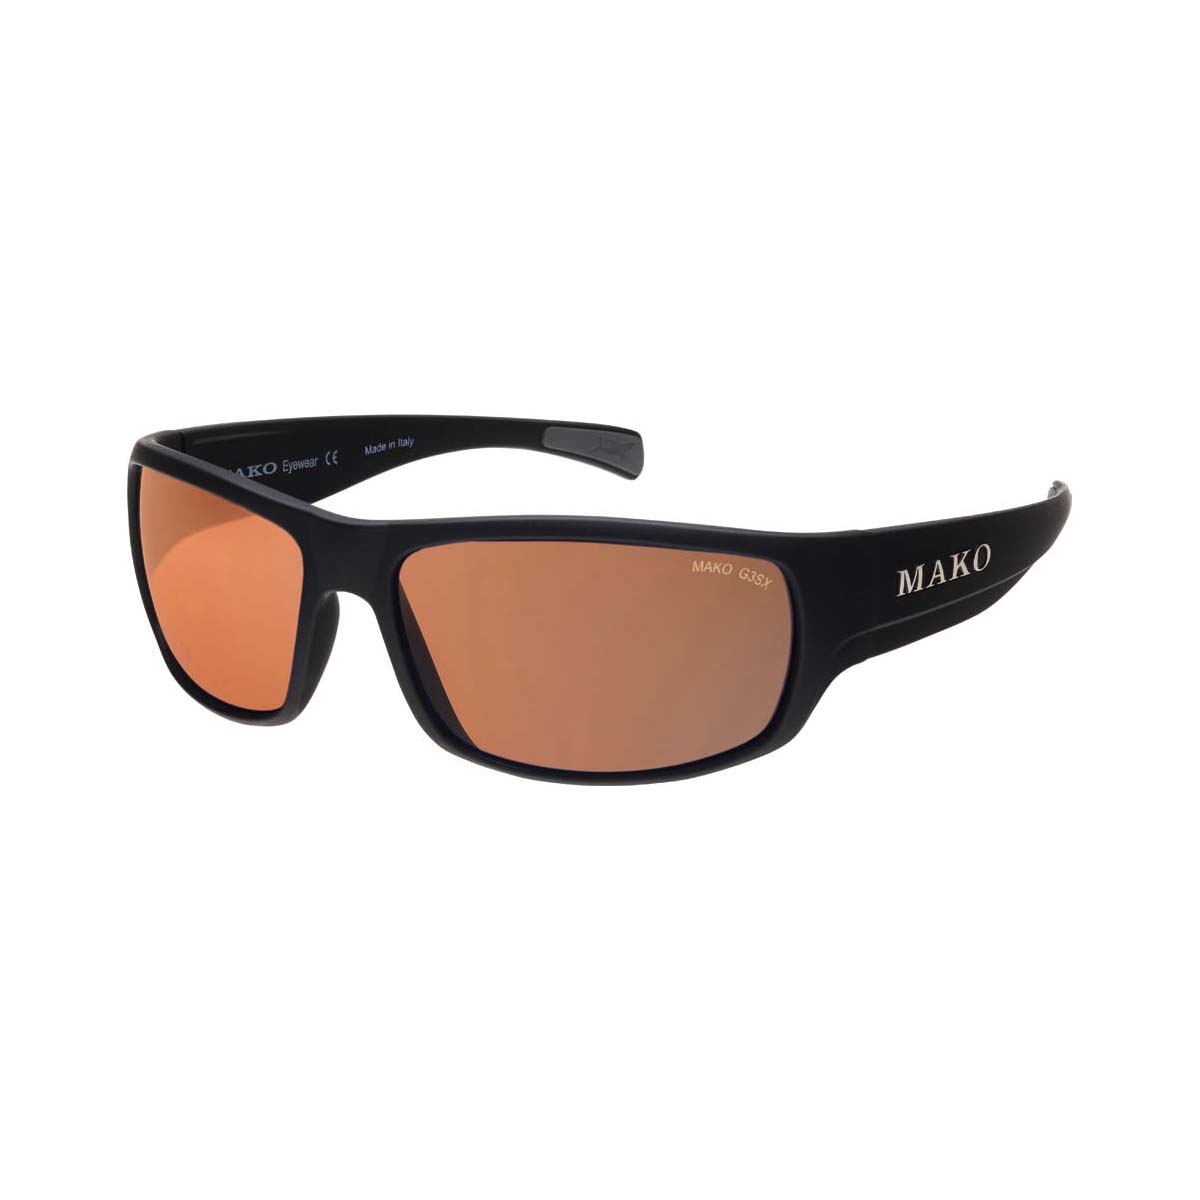 MAKO Escape Polarised Sunglasses with Copper Lens